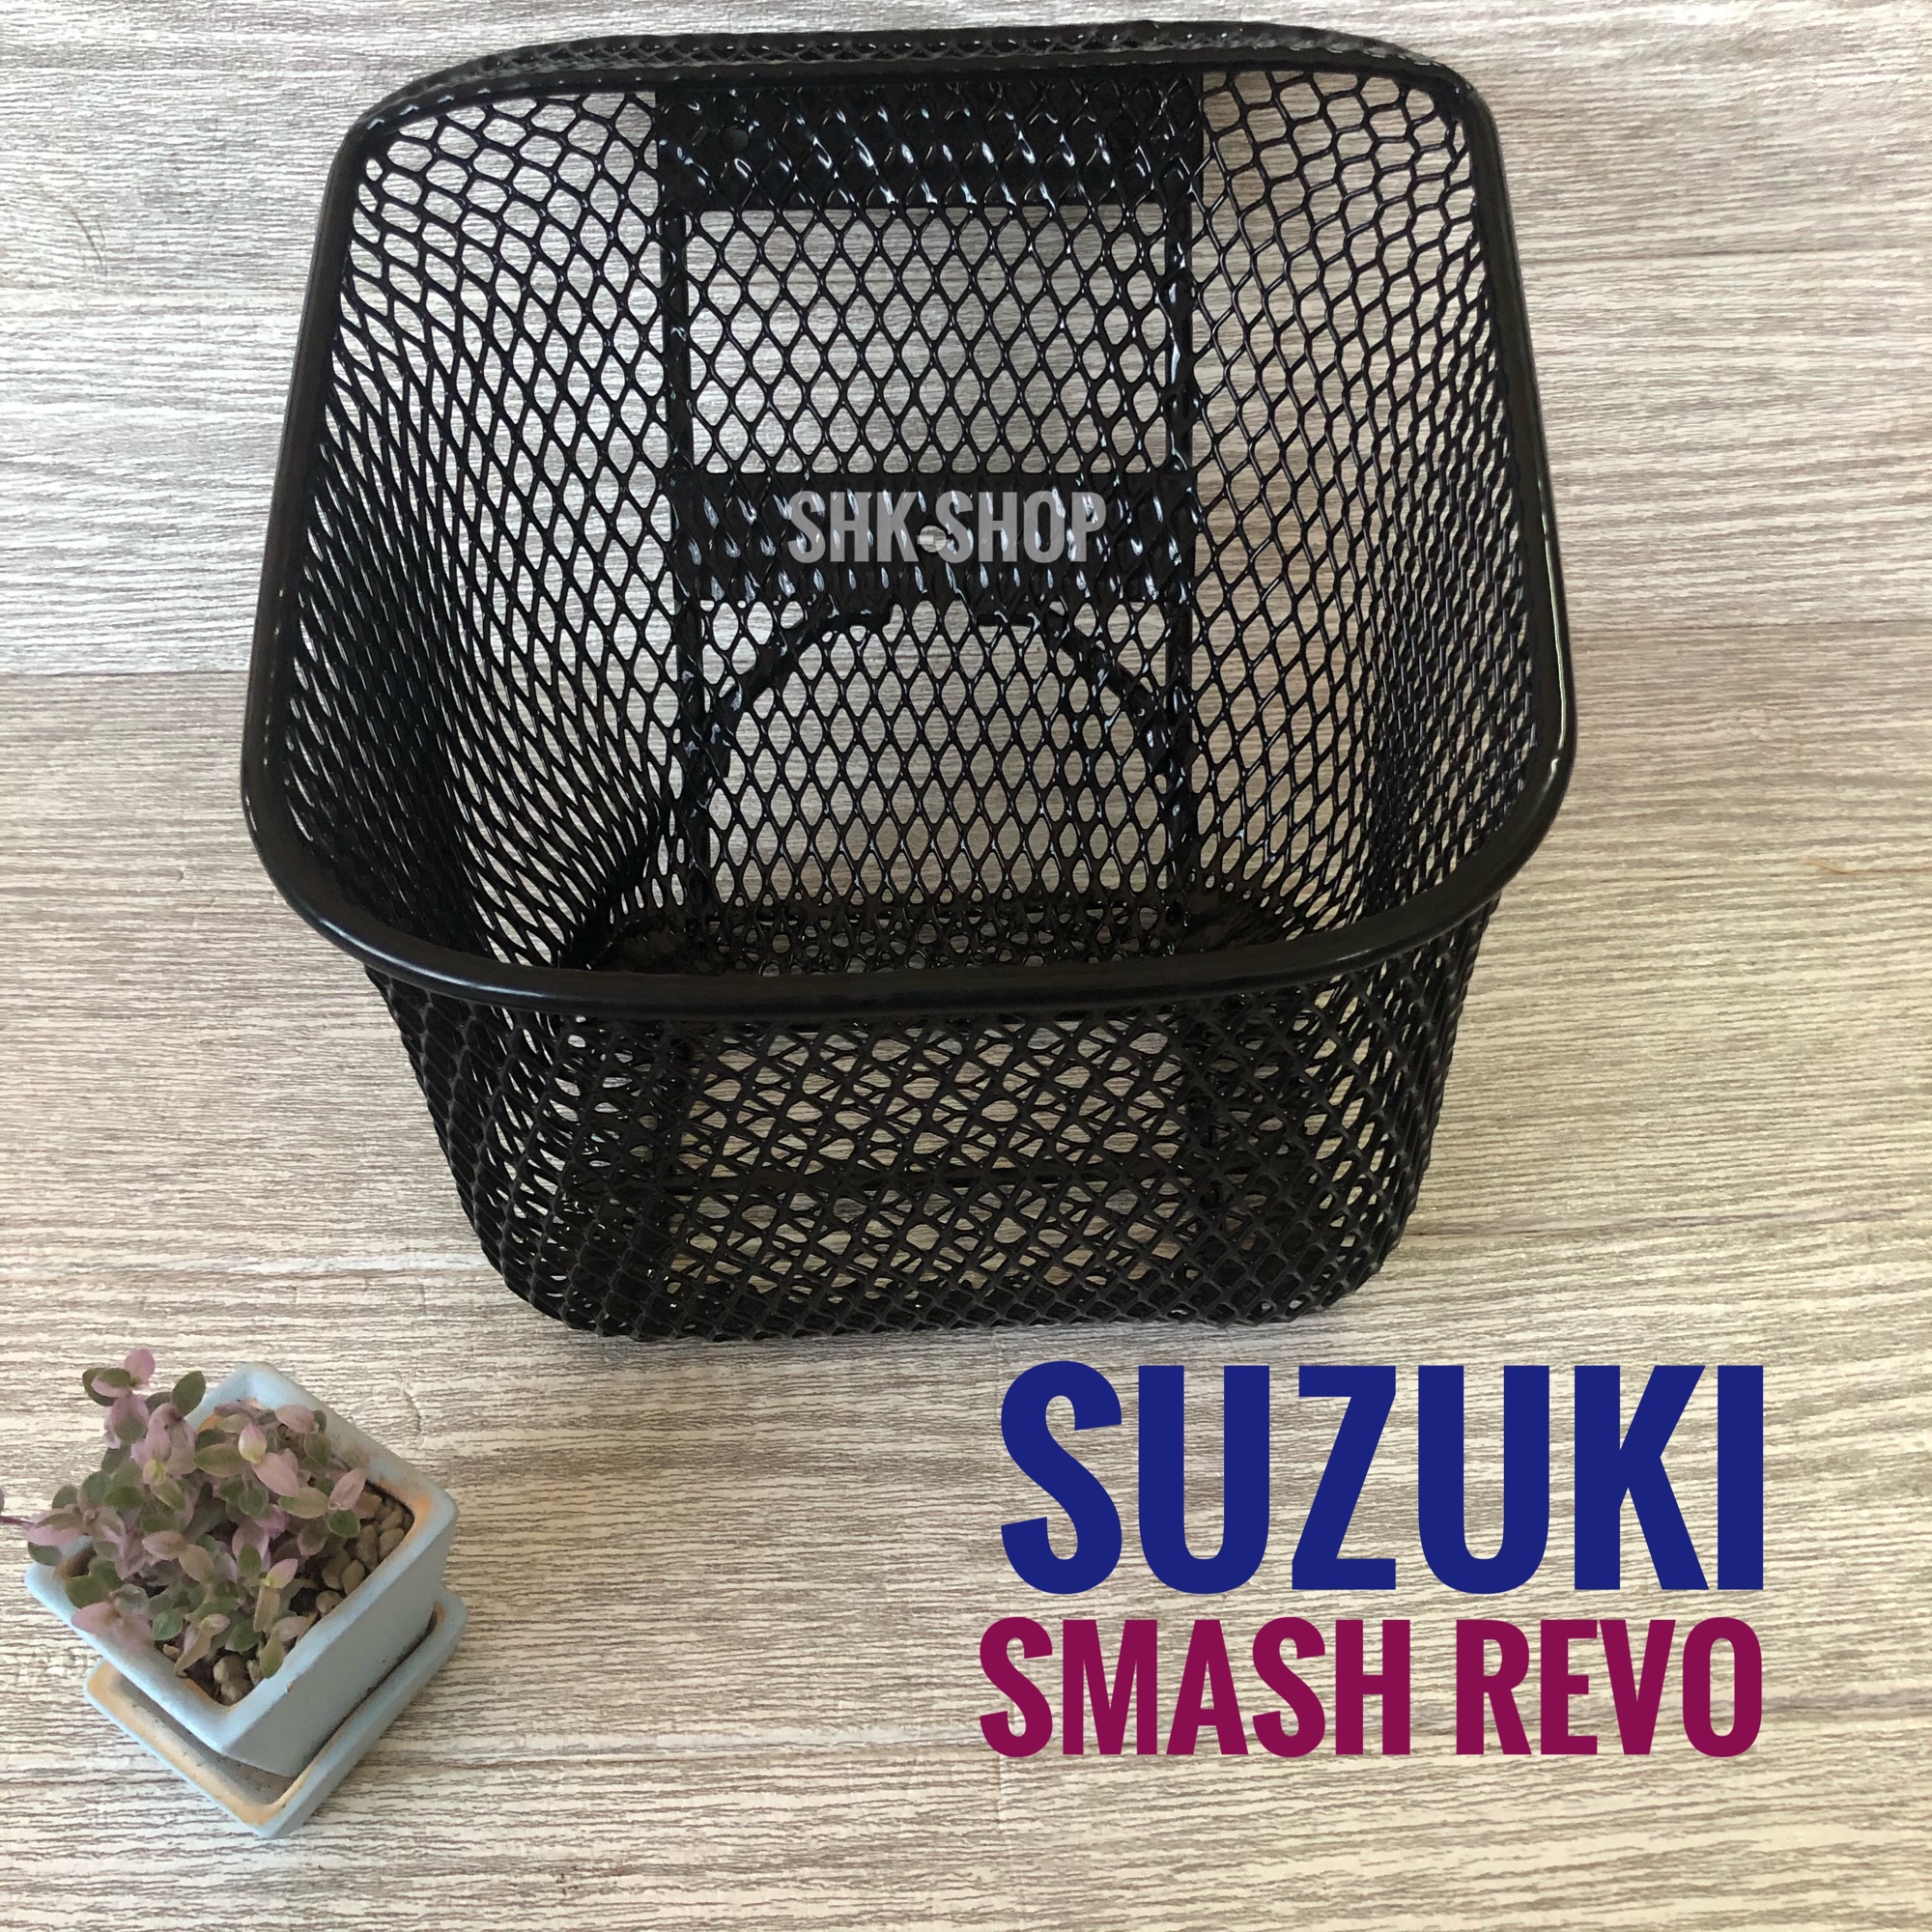 ตะกร้าหน้า SUZUKI SMASH REVO ซูซูกิ สะแมช รีโว ตะกร้า ตระกร้า มอเตอร์ไซค์